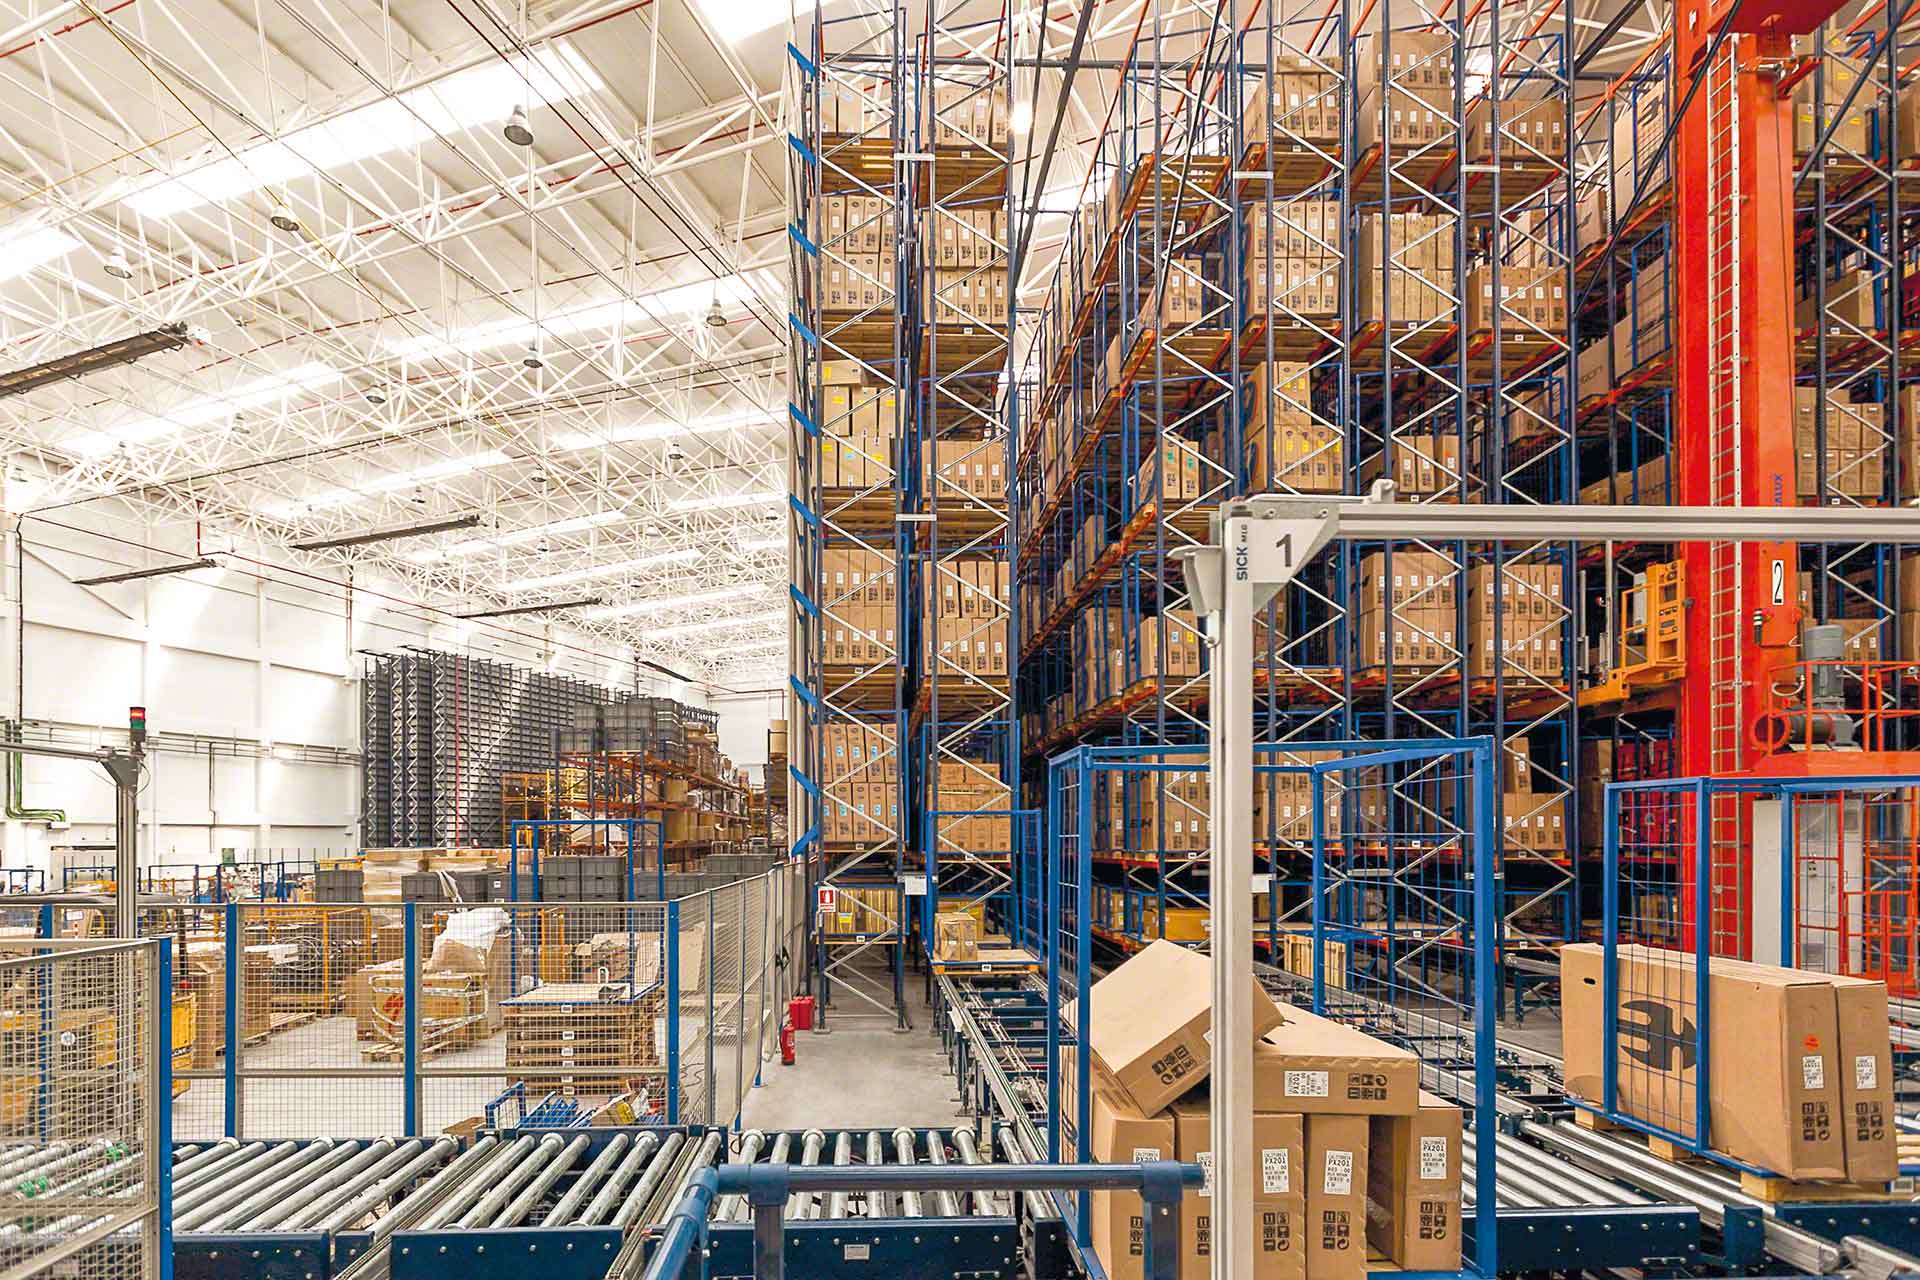 Automatische magazijnen zijn een voorbeeld van digitale transformatie in de logistiek